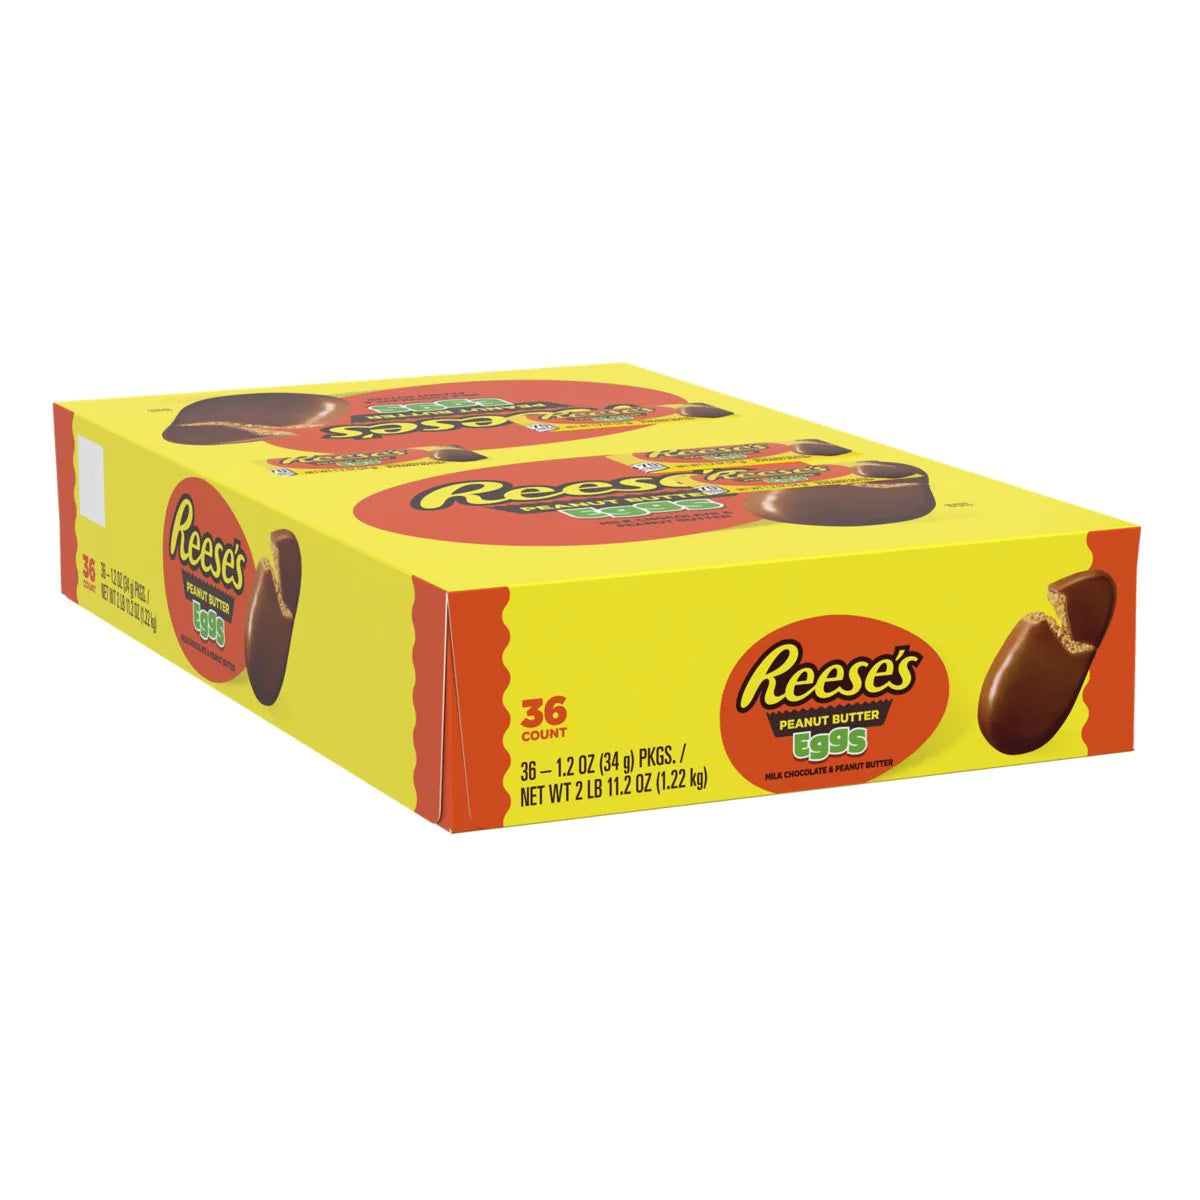 Un paquet en carton jaune et orange sur fond blanc avec à droite un chocolat en forme d'oeuf qui s'ouvre sur son côté gauche et on voit qu'il est fourré au beurre de cacahuète